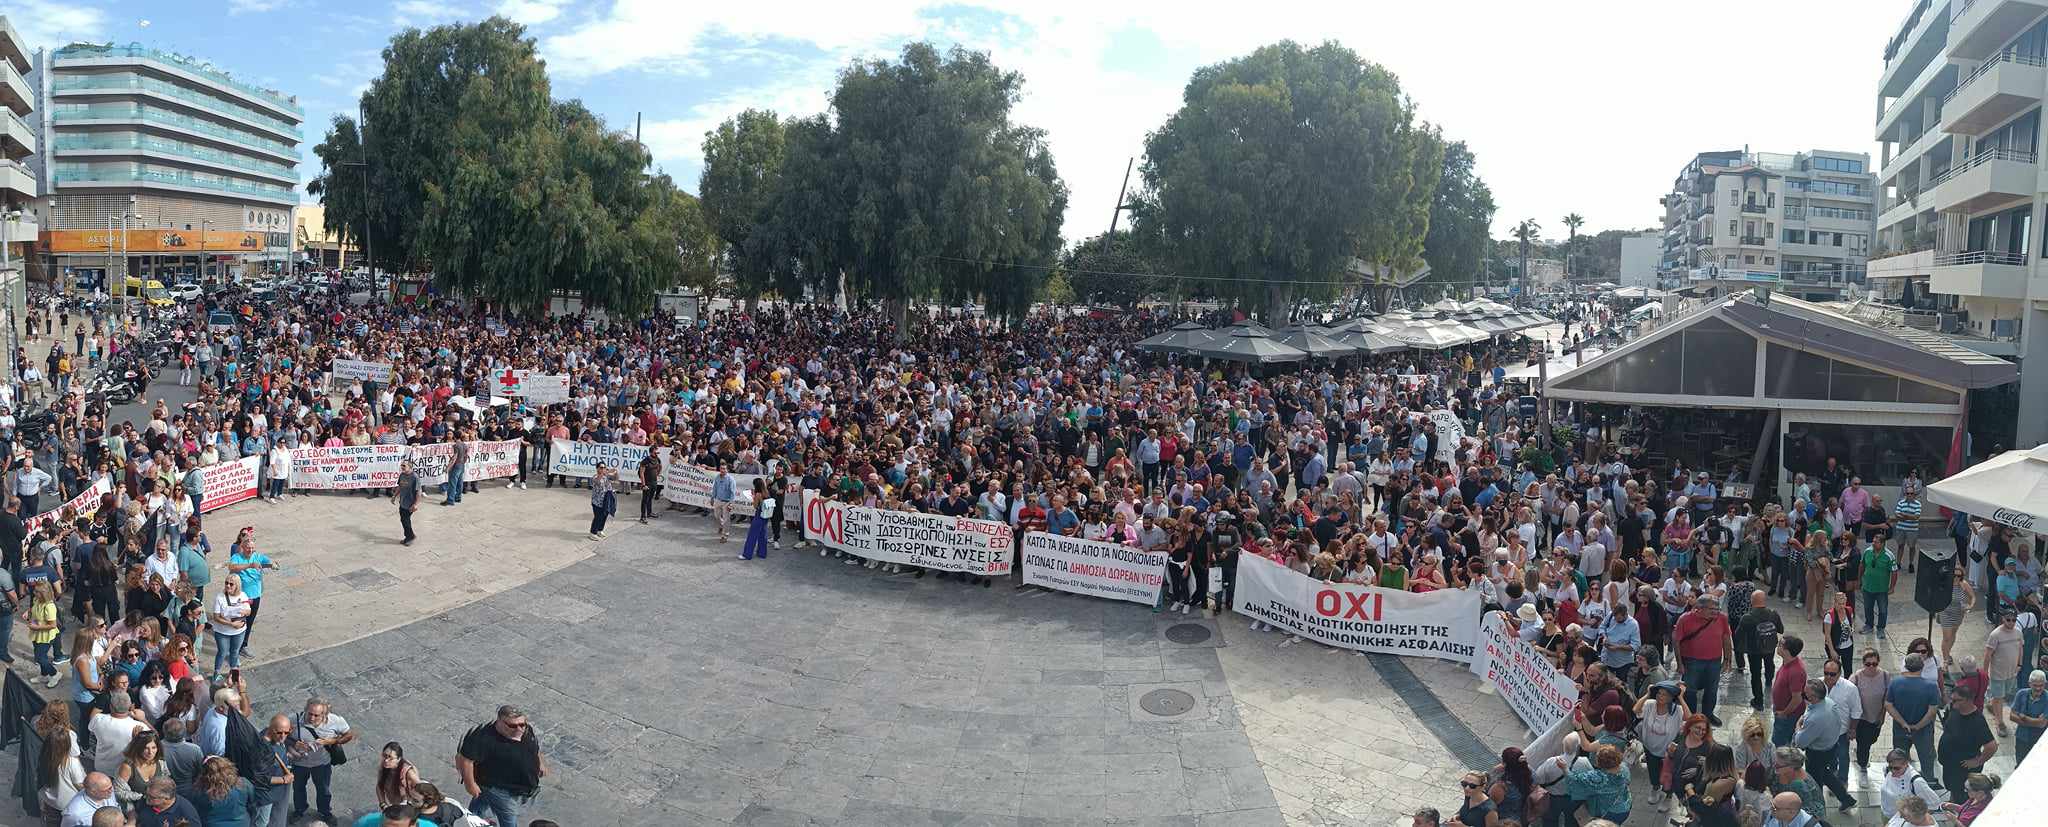 Ηράκλειο: Πλήθος κόσμου στην πορεία για τη σωτηρία του Βενιζέλειου – Τι είπε ο Μ. Χρυσοχοΐδης στην ΕΡΤ για την “καρατόμηση” της διοίκησης